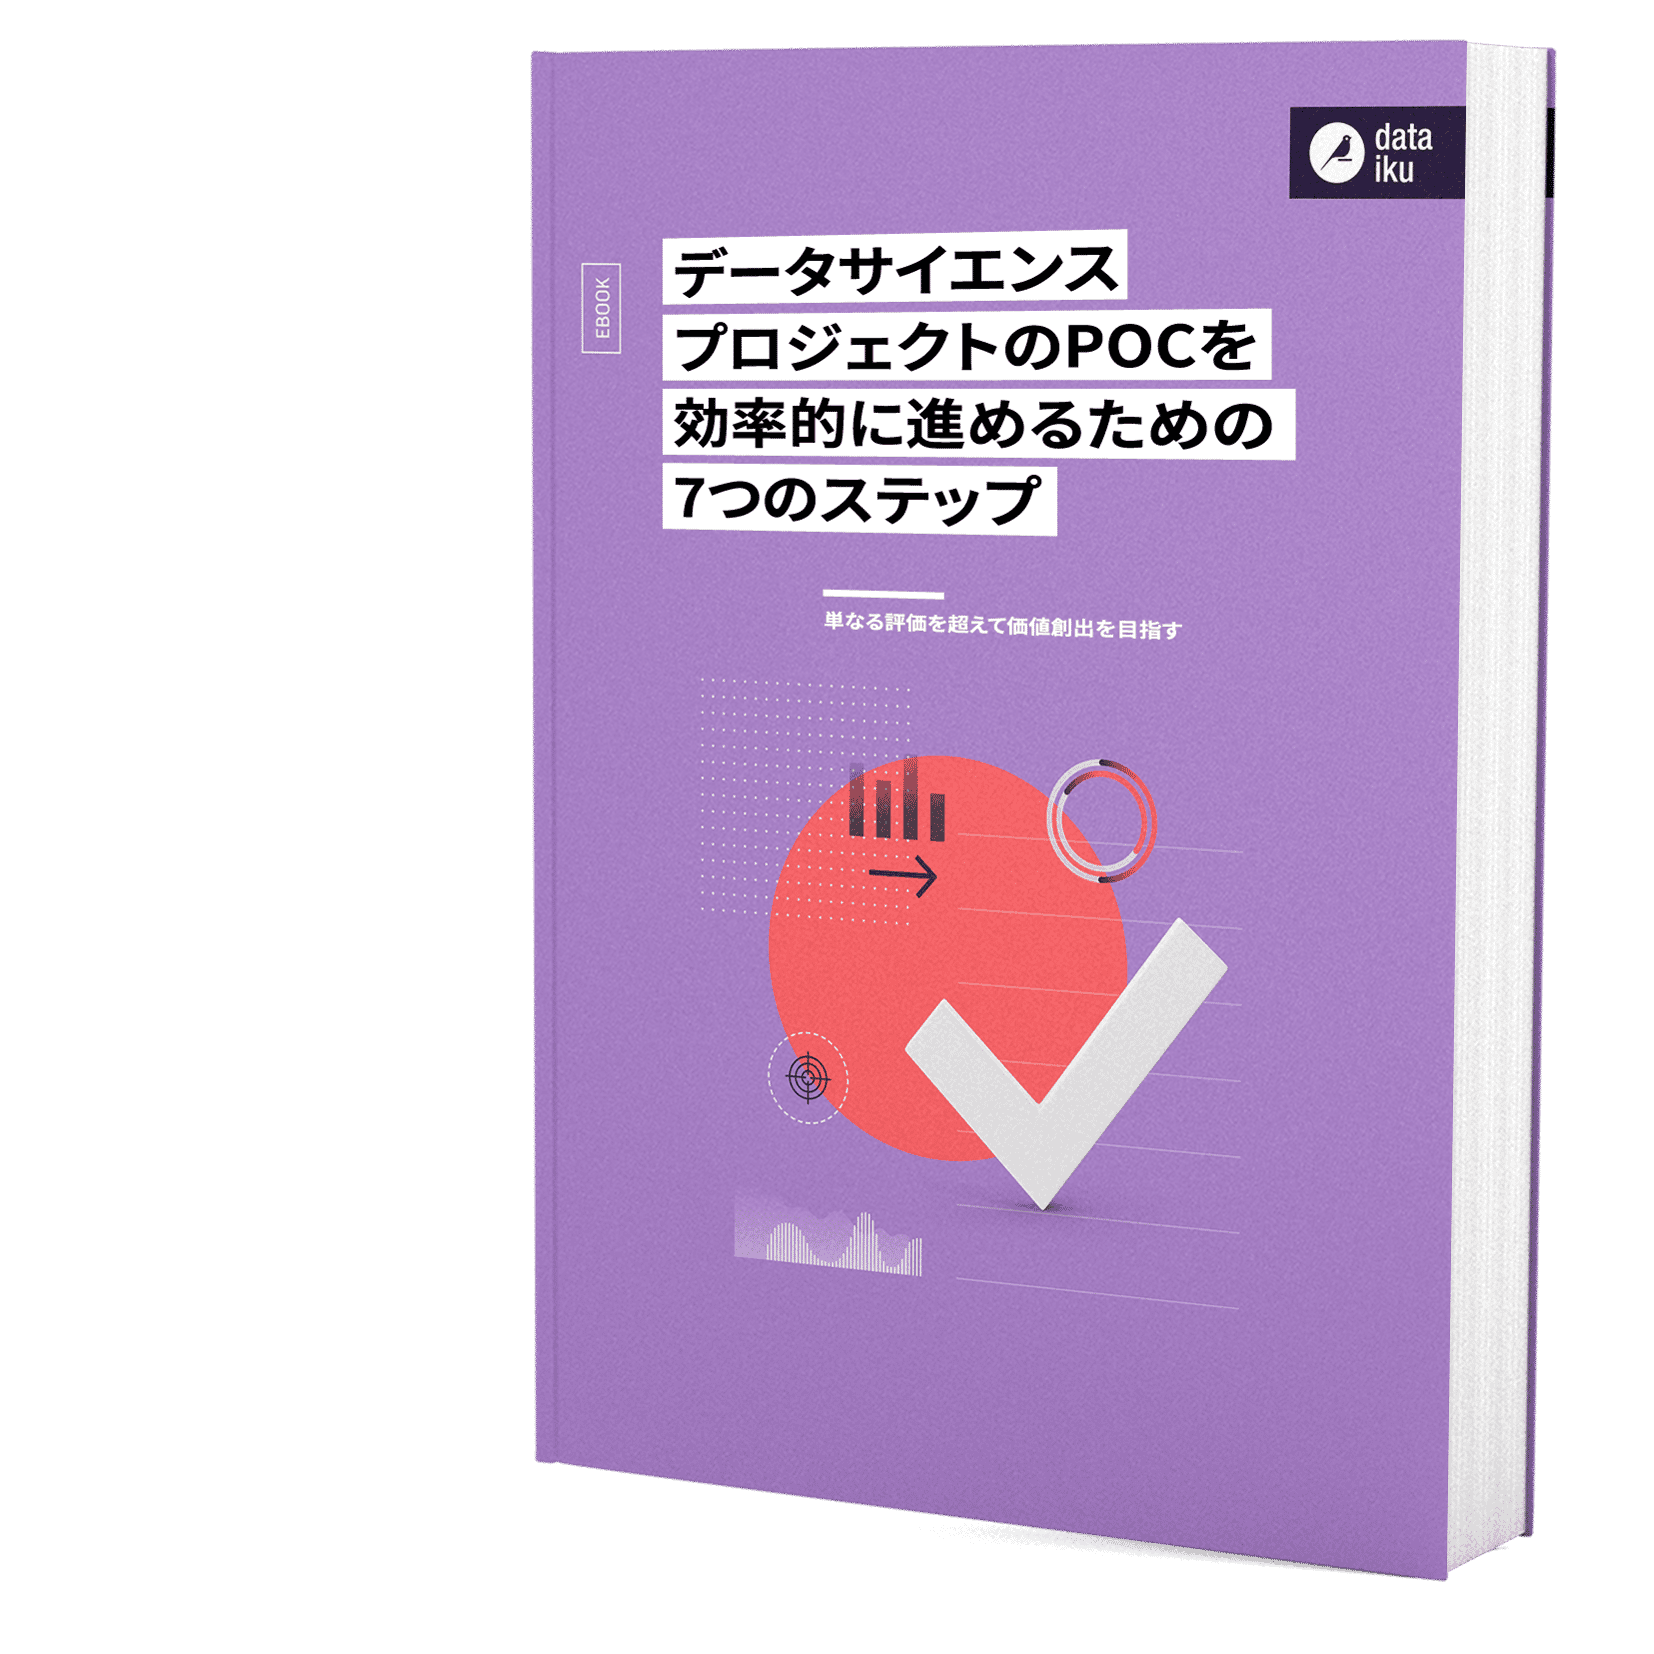 3D Cover POC Ebook JP